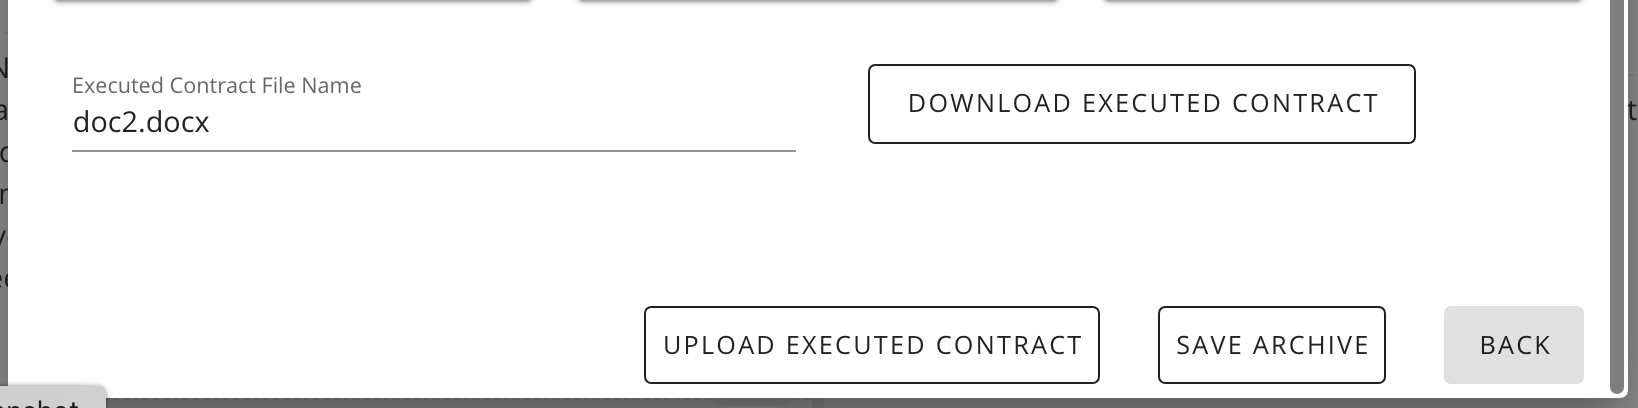 downloadexecutedcontract